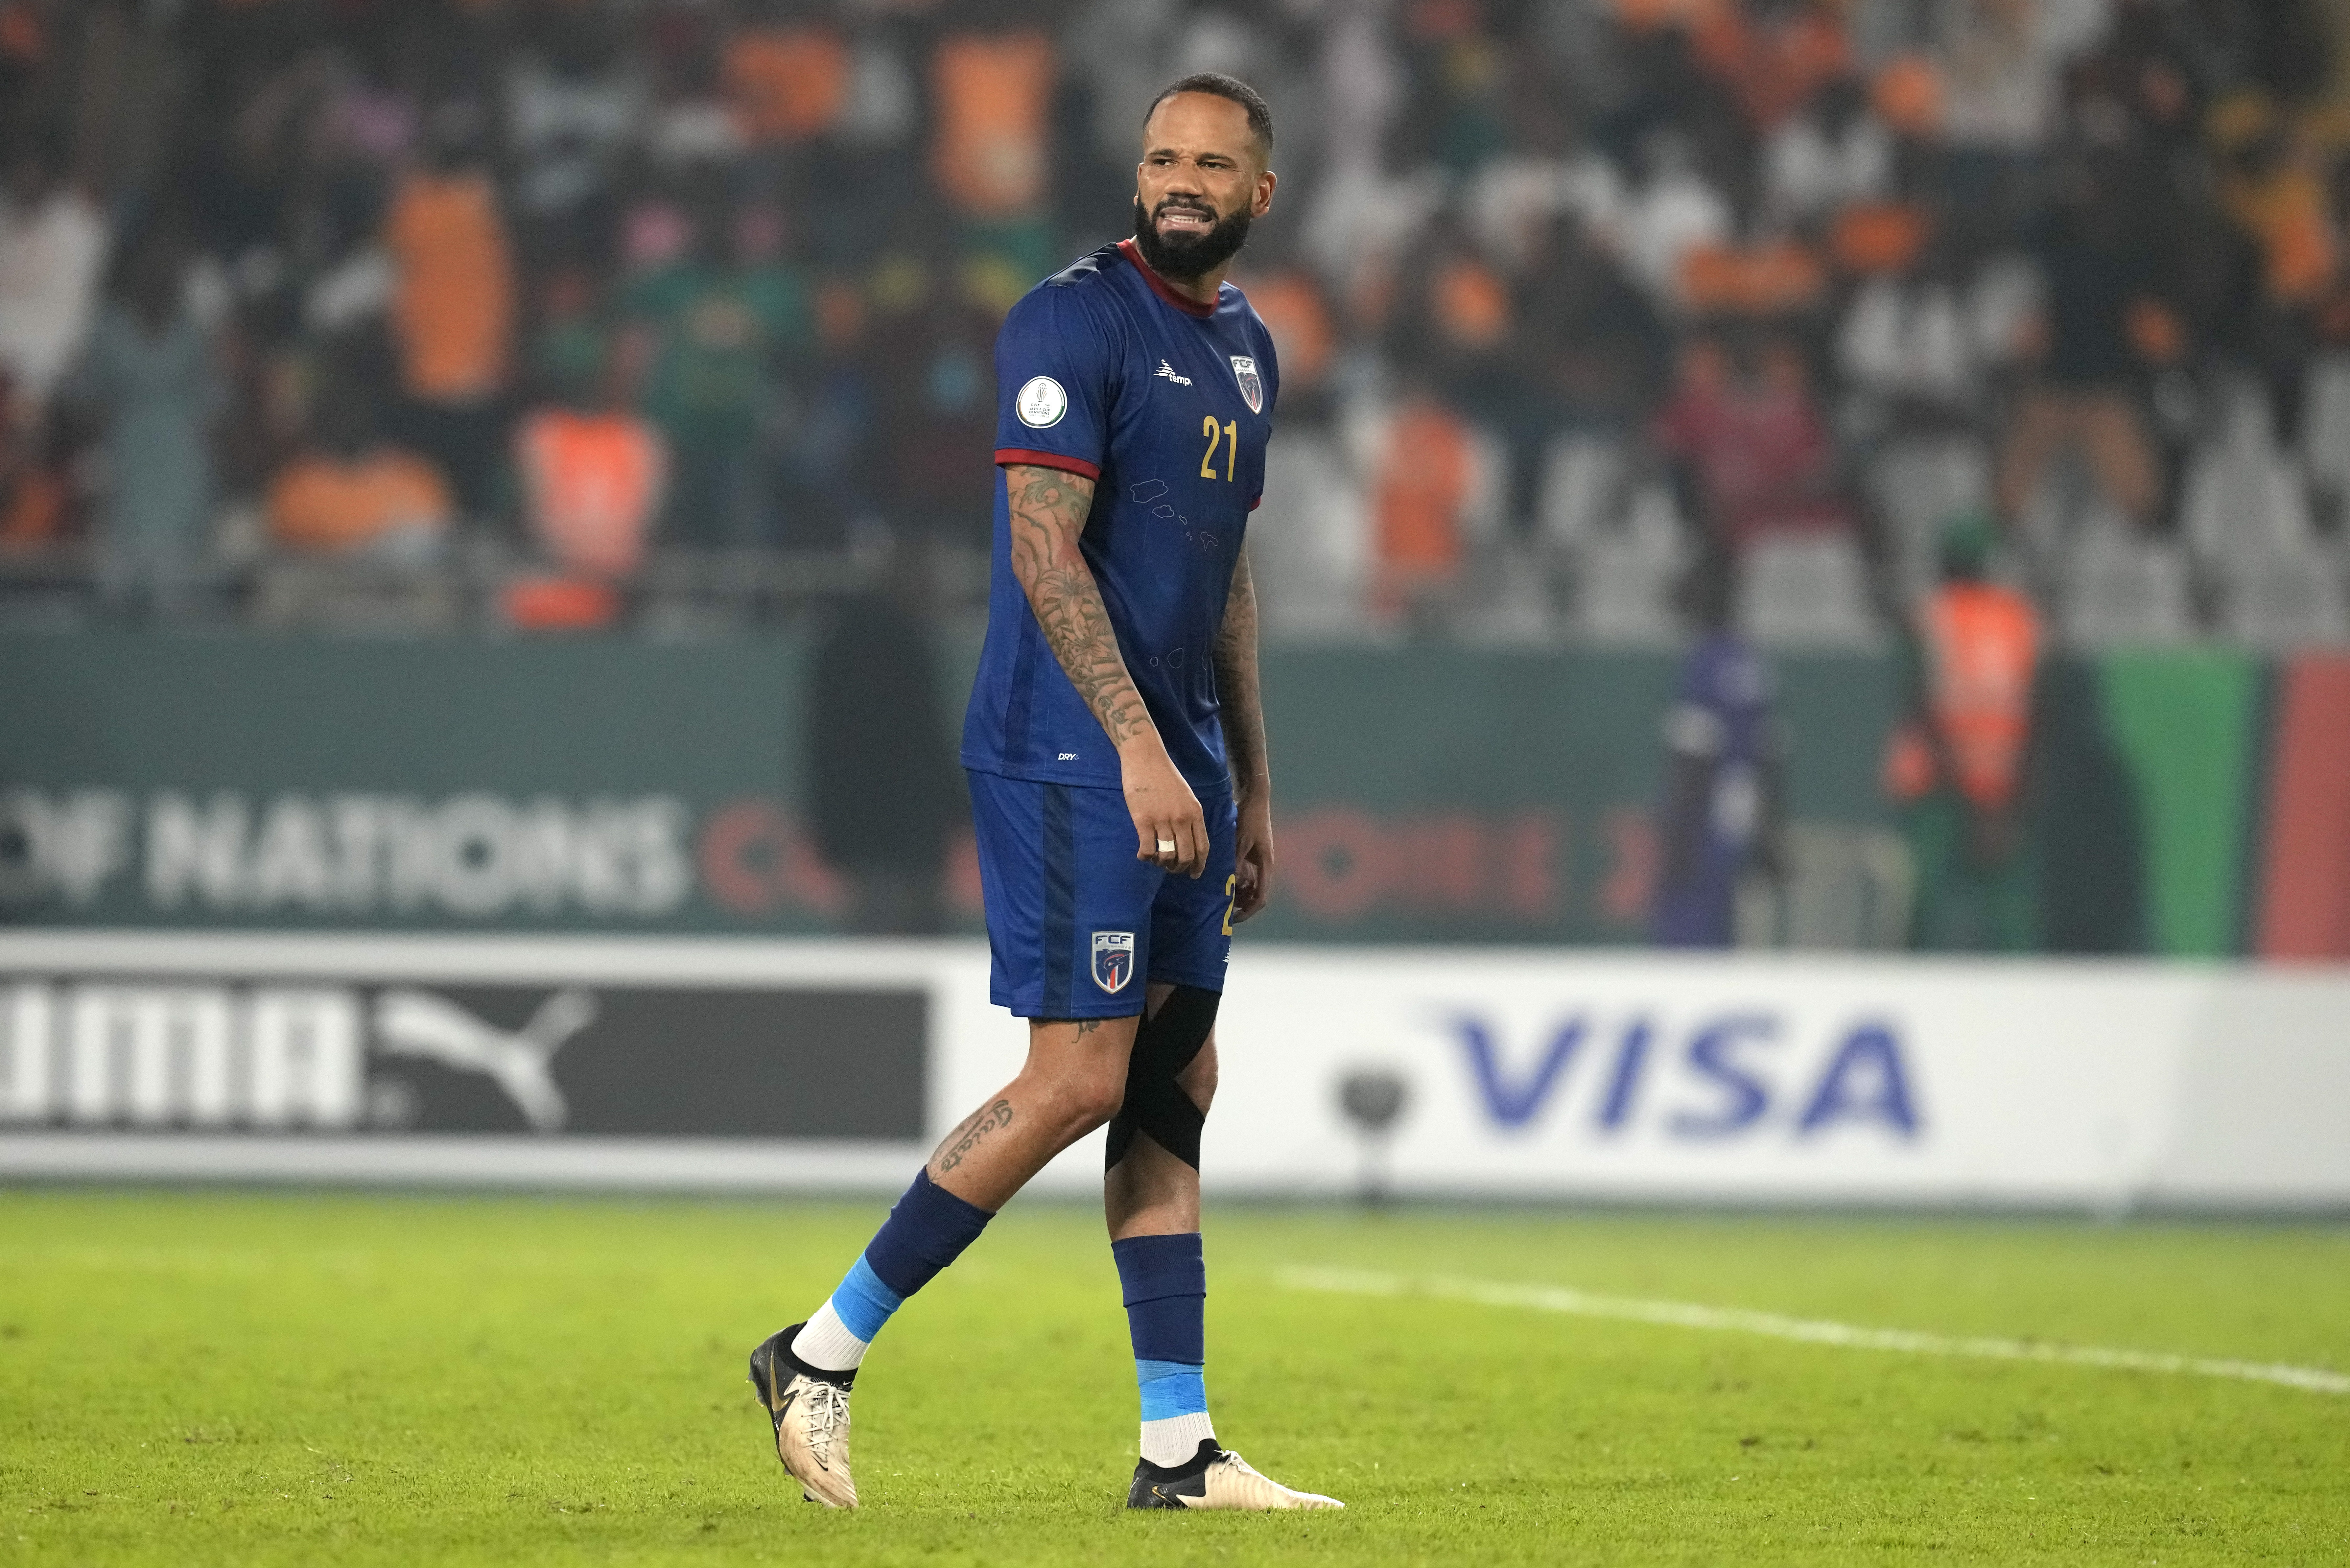 Der ehemalige Star von Man United schied mit Kap Verde aus der Afcon aus